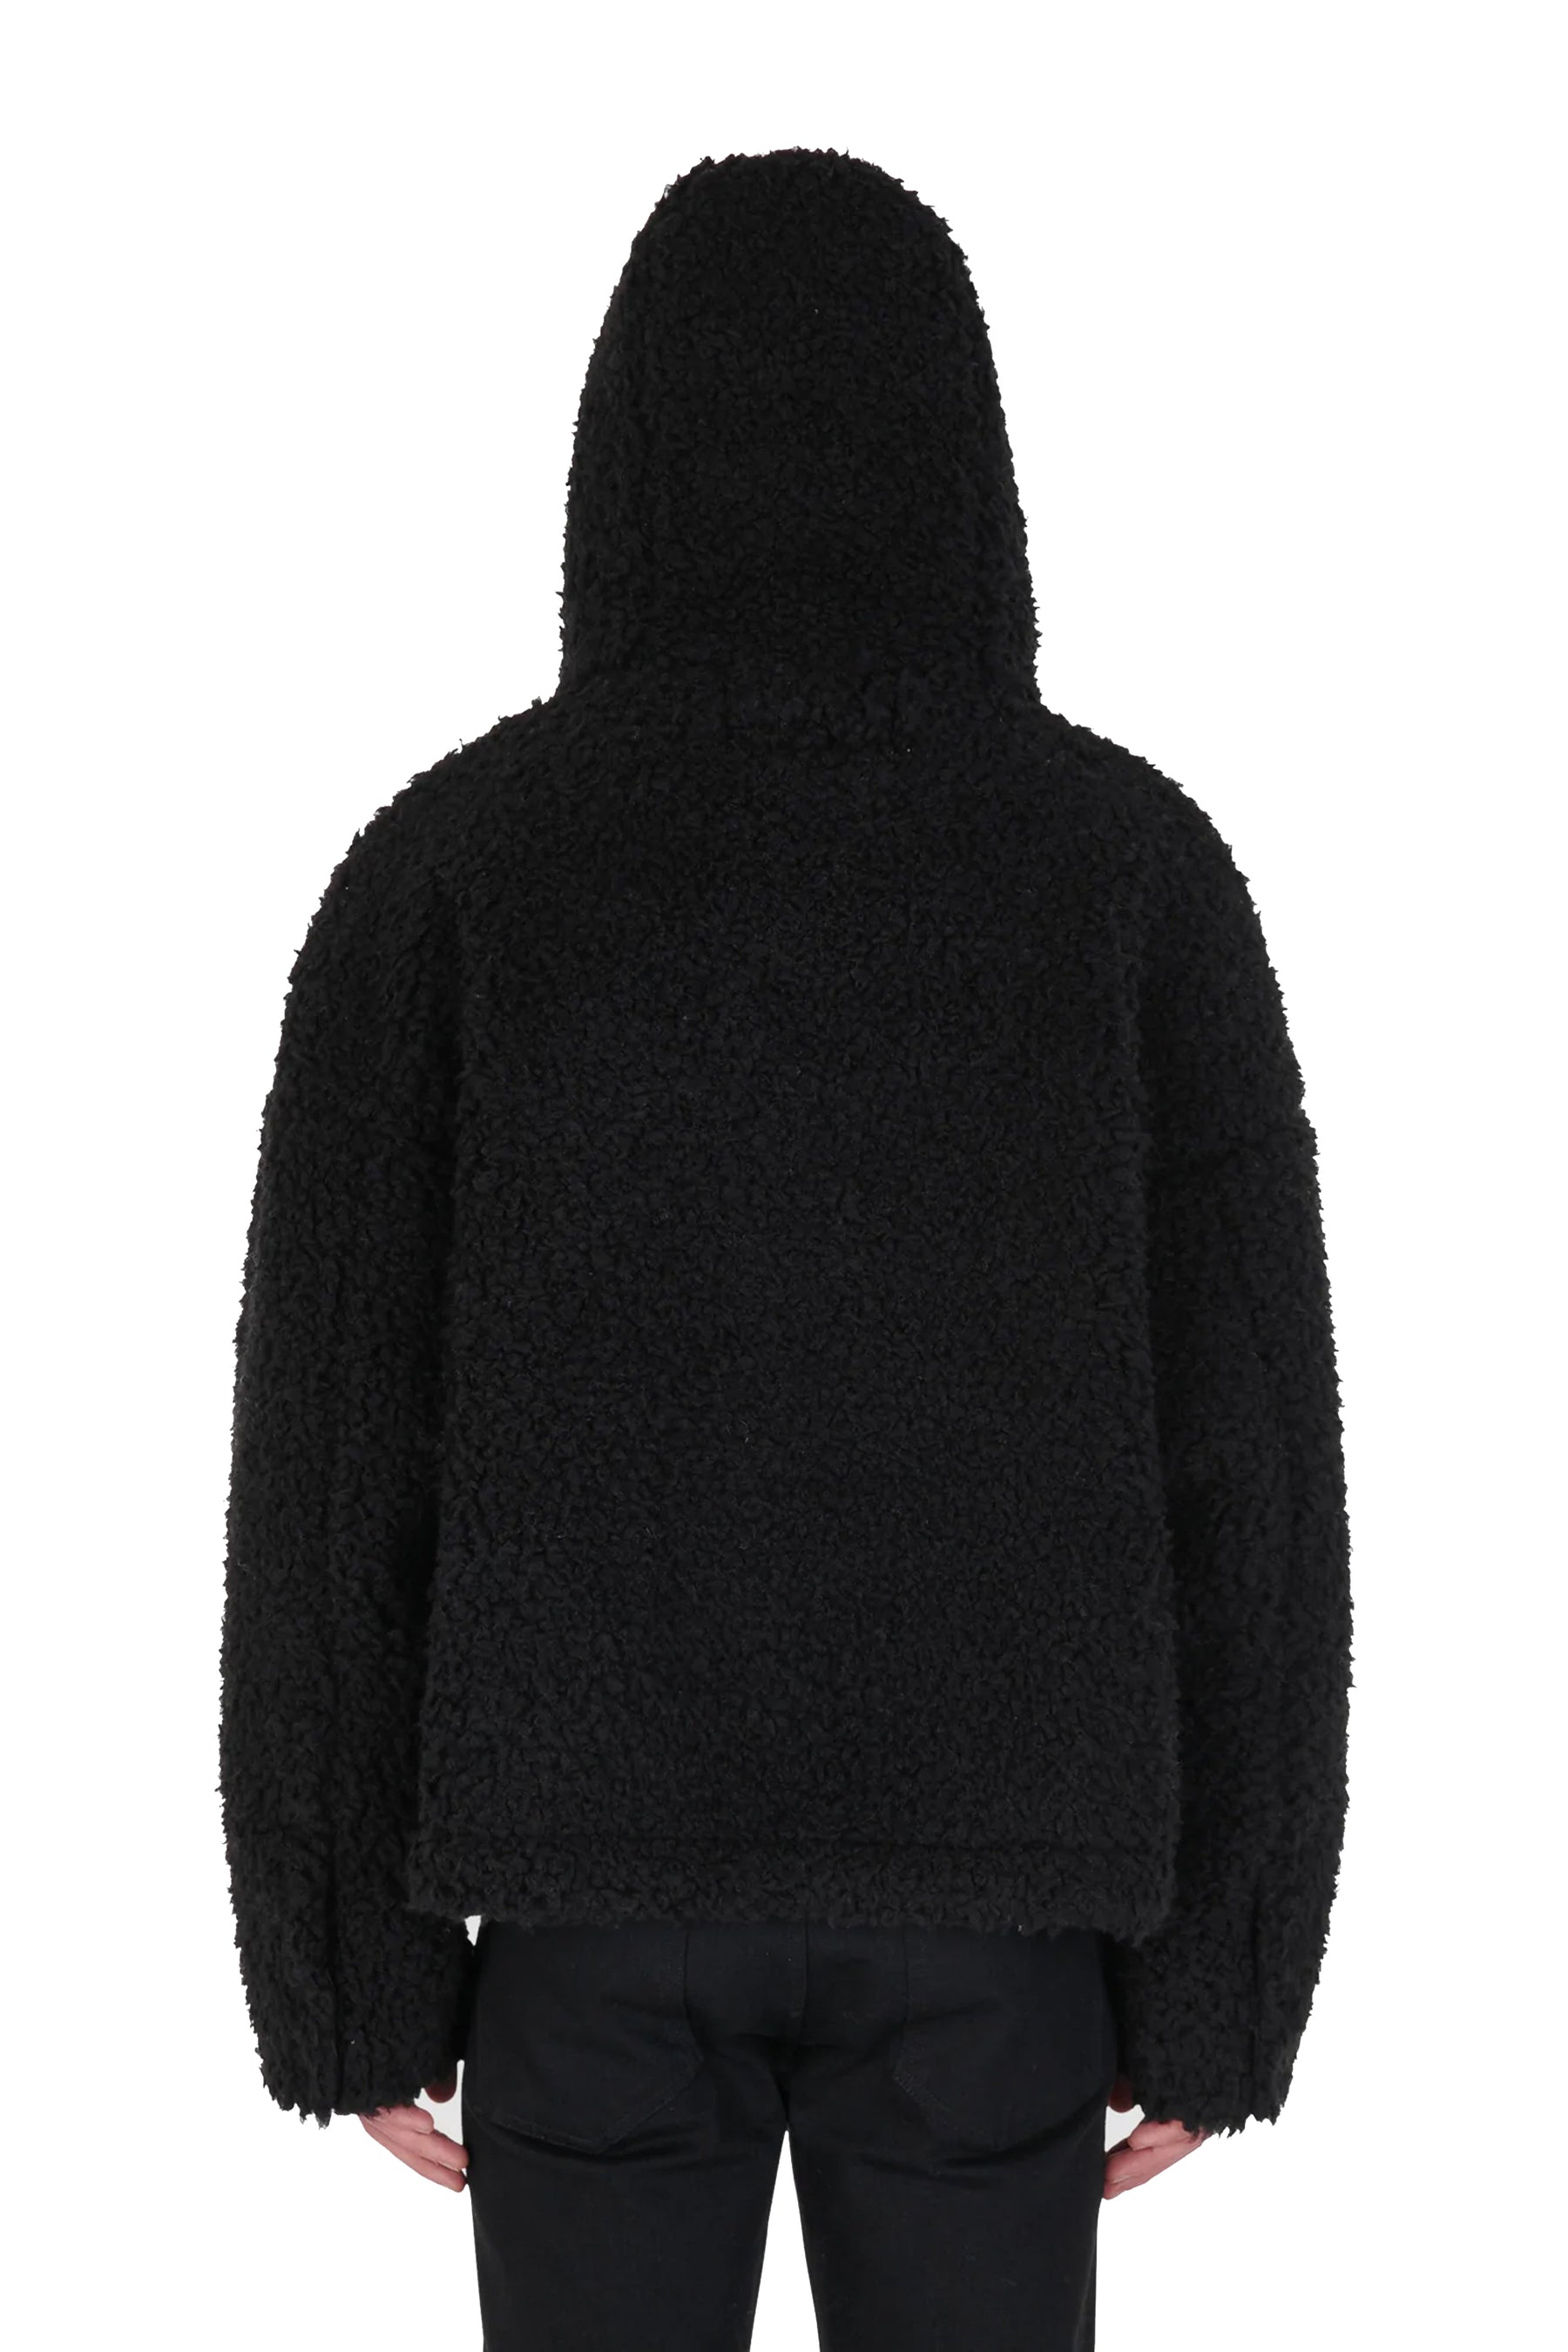 送料無料キャンペーン?】 アリクス pullover jacket 21aw aid-umeda.com